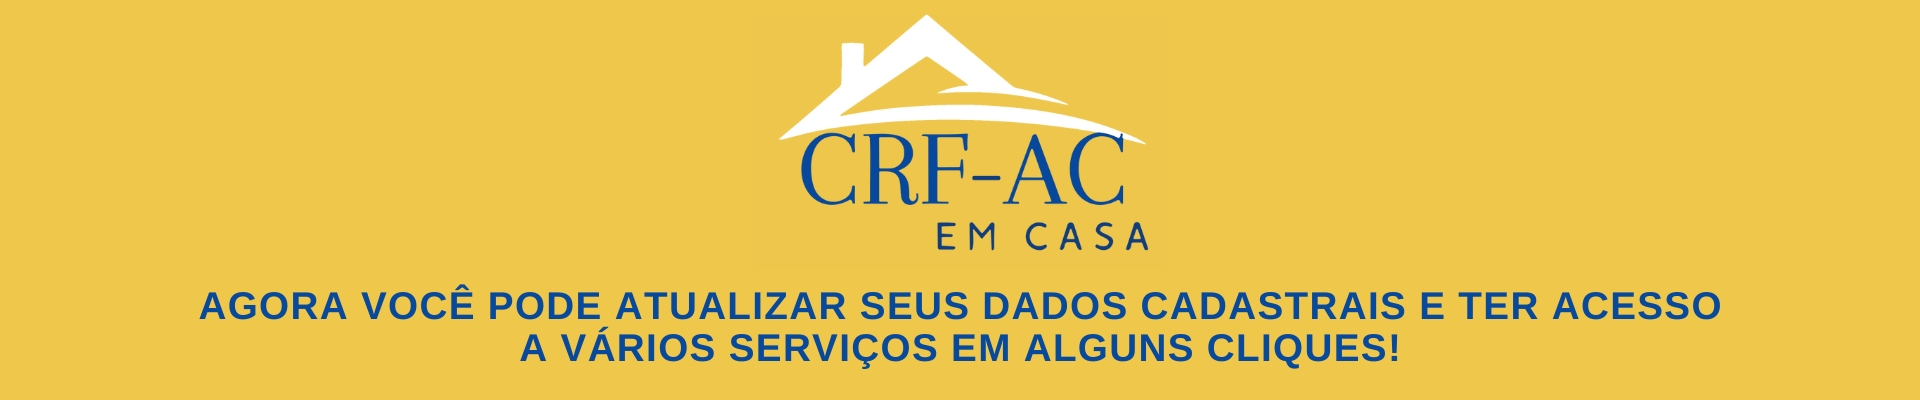 CRF-AC EM CASA